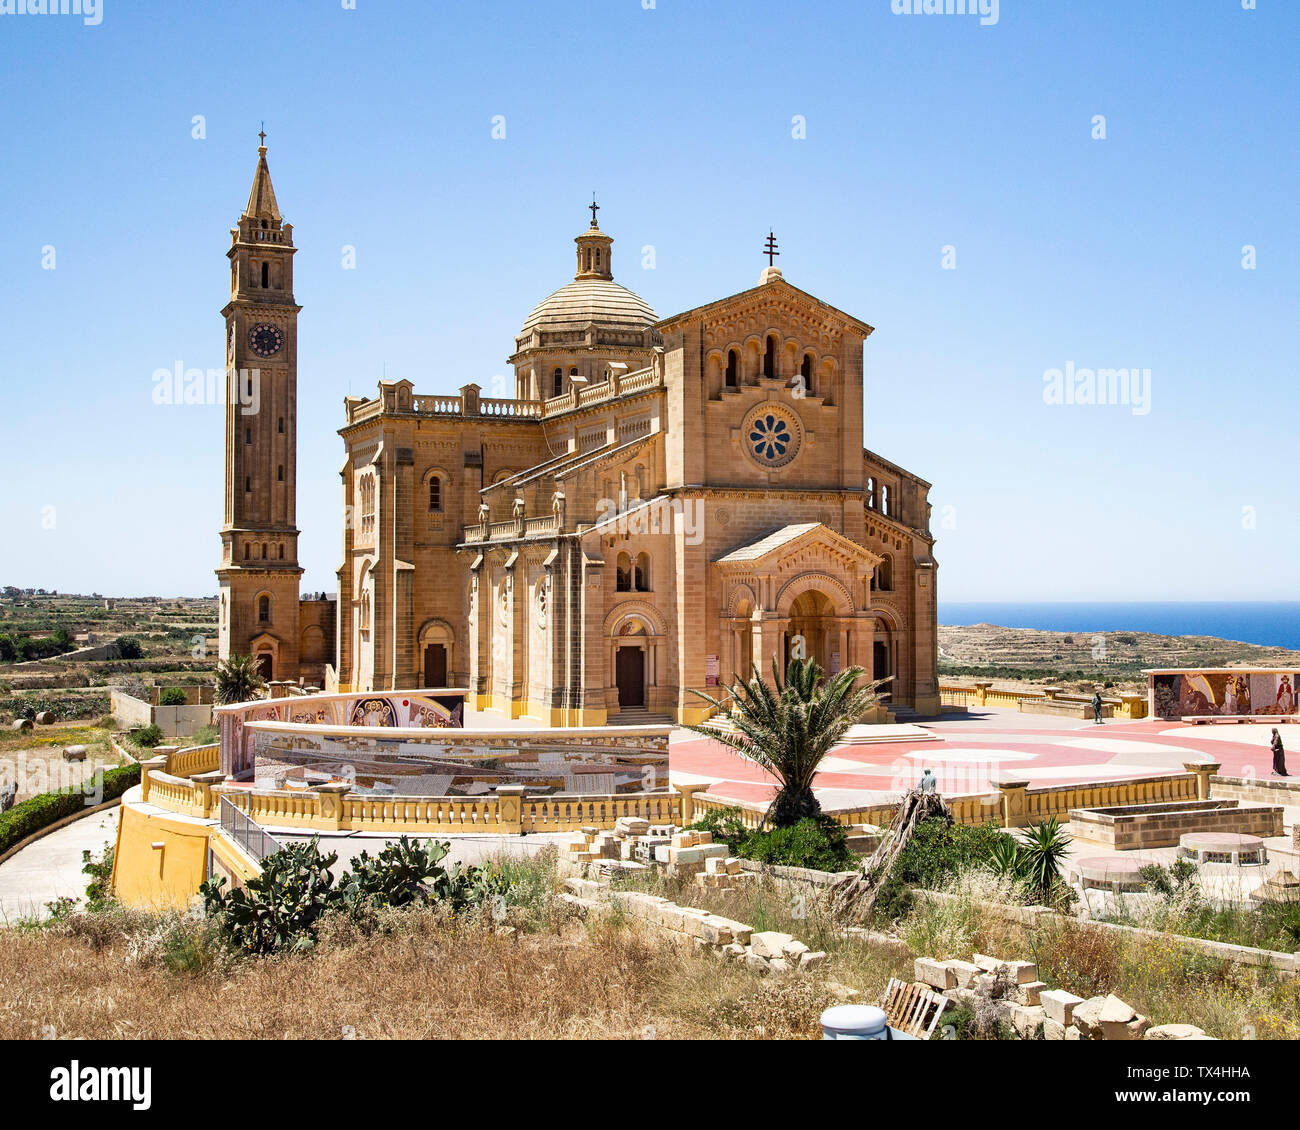 La Basilica del Santuario Nazionale della Vergine di Ta' Pinu di Gozo, vicino a Malta Foto Stock